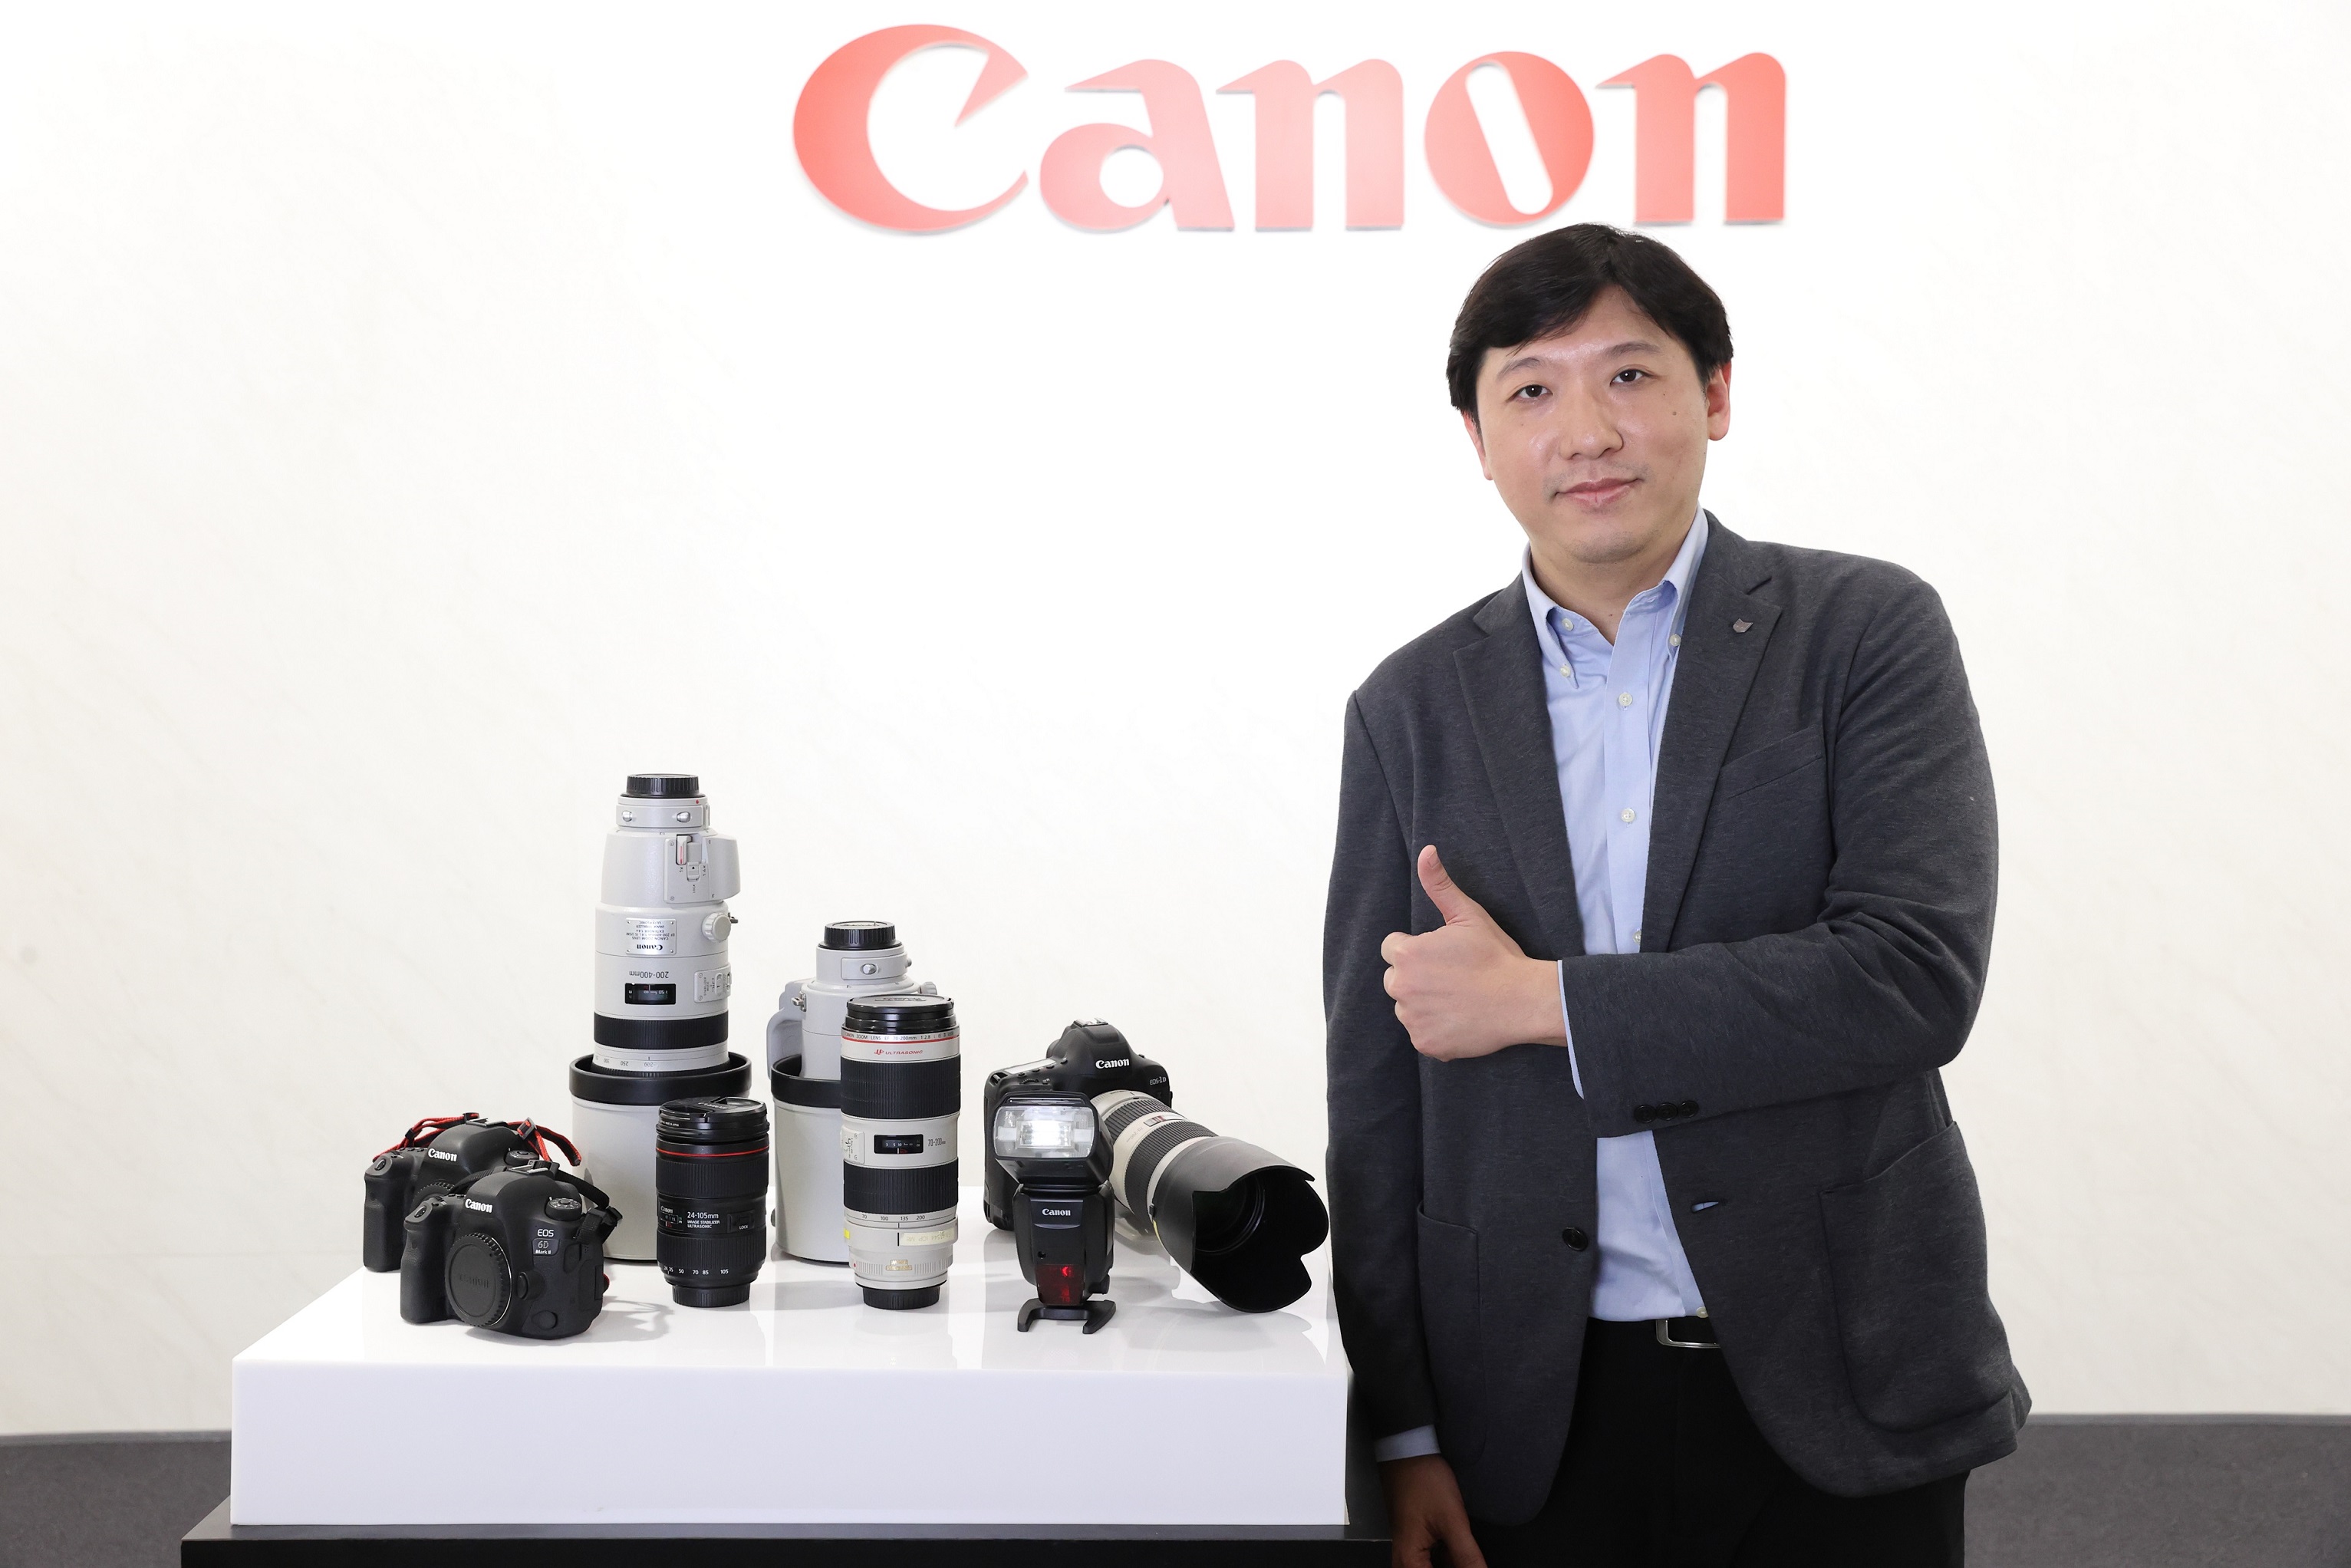 แคนนอน ชูศักยภาพ ตอกย้ำบริการหลังการขายแบบเต็มรูปแบบ ด้วยบริการตรวจเช็คซ่อมกล้องและเลนส์เคลื่อนที่ “Canon Camera Onsite Service Plus” ตอบโจทย์ลูกค้าระดับองค์กรธุรกิจ